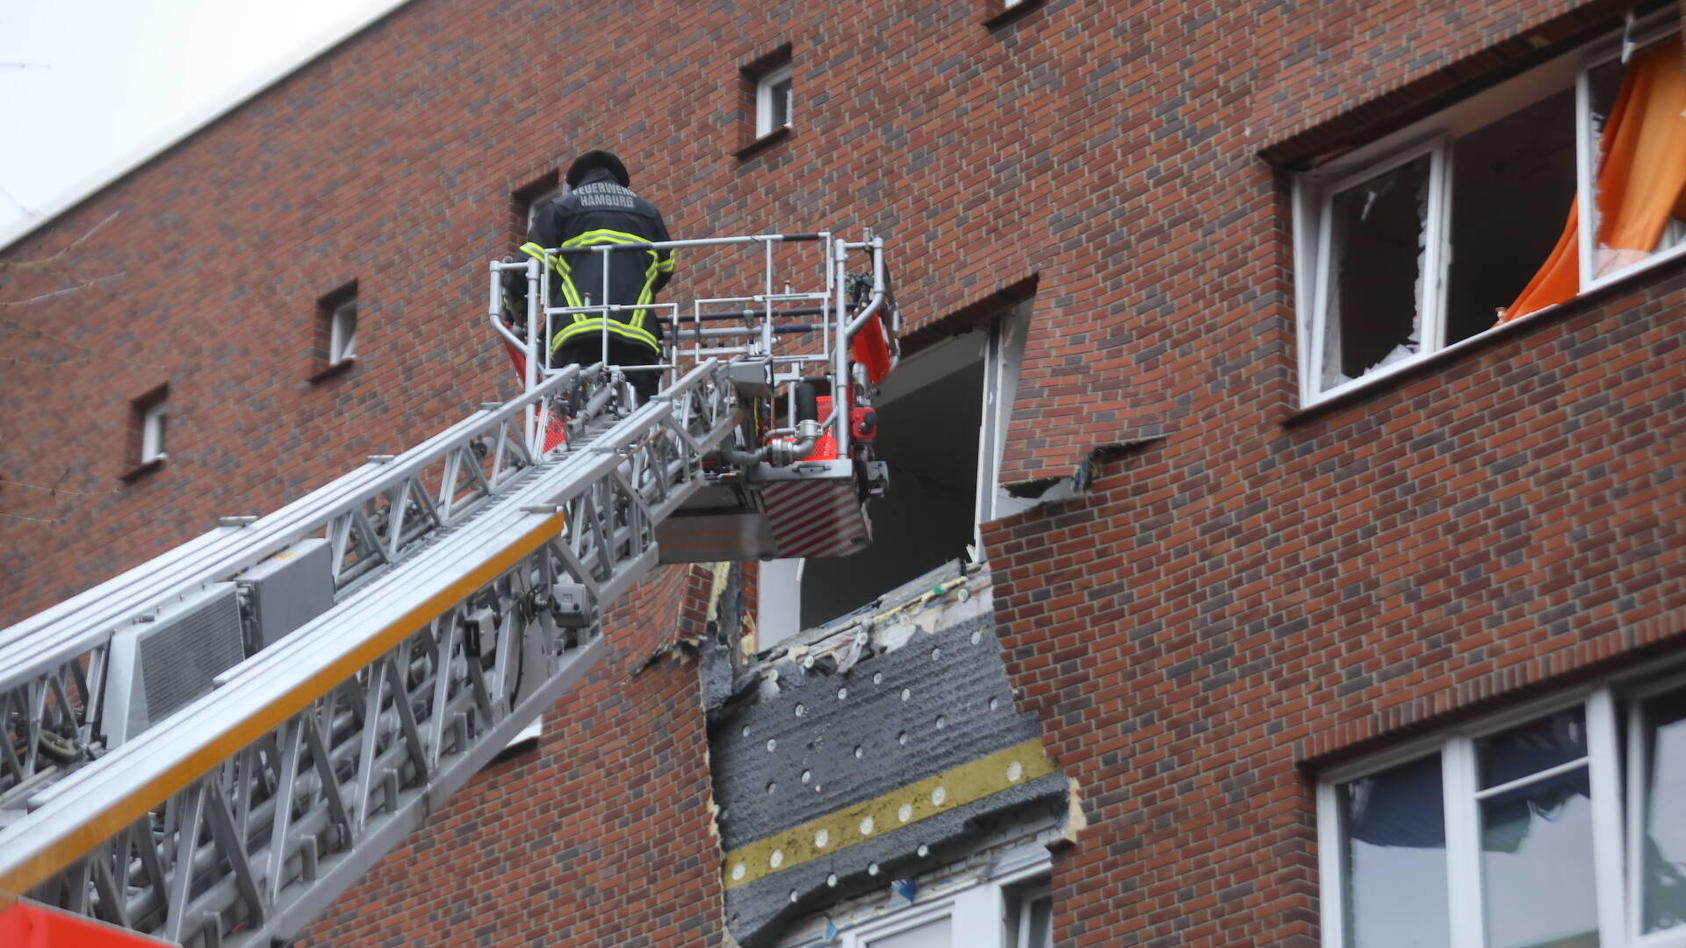 Zwei Männer hatten in Hamburg mit Drogen hantiert und dabei eine Explosion ausgelöst.